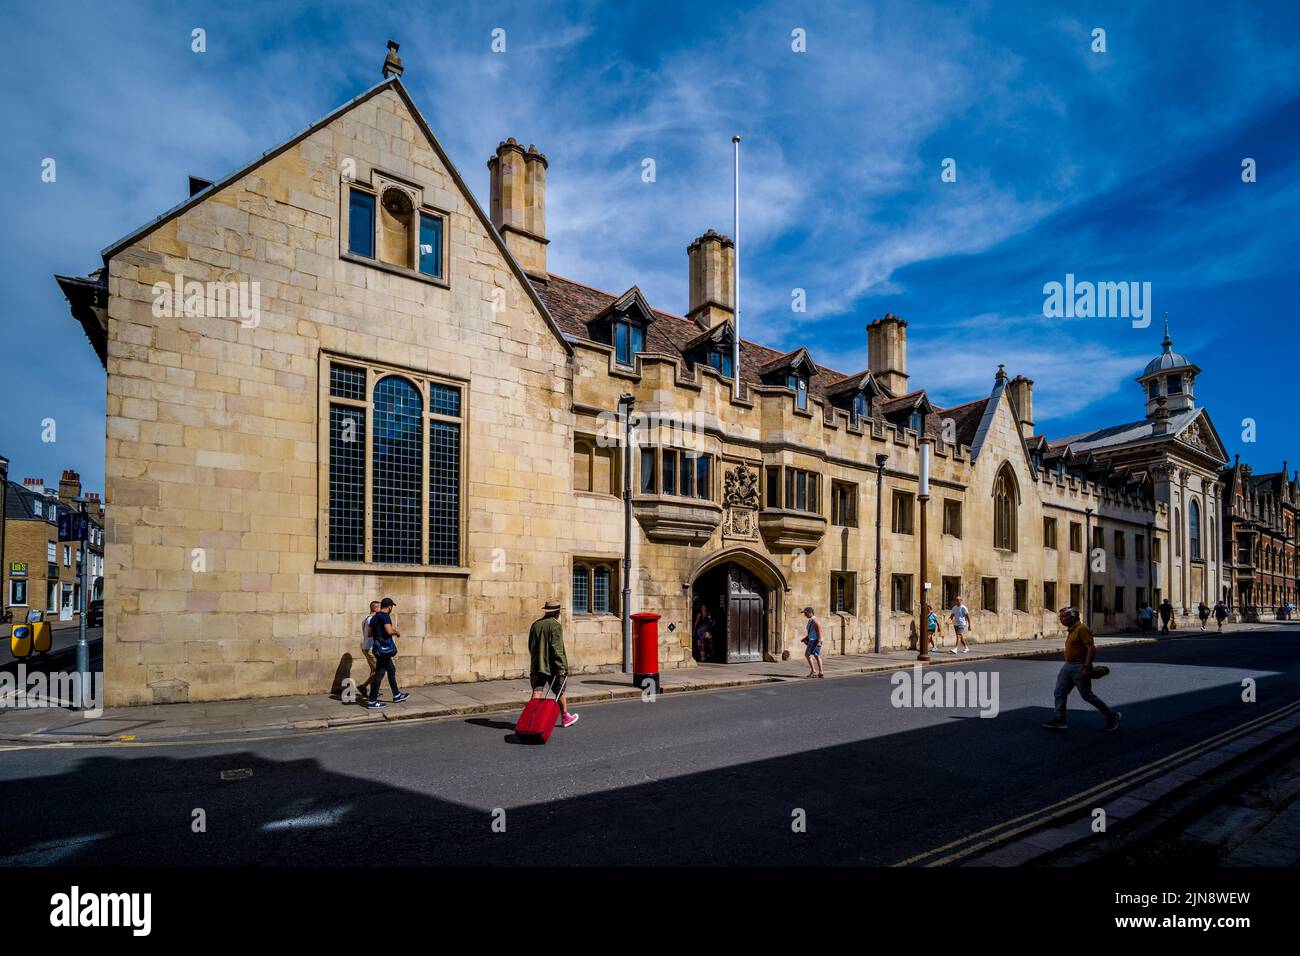 Pembroke College, ingresso principale dell'Università di Cambridge - esterno del Pembroke College Cambridge University, fondato nel 1347, nel centro di Cambridge nel Regno Unito Foto Stock